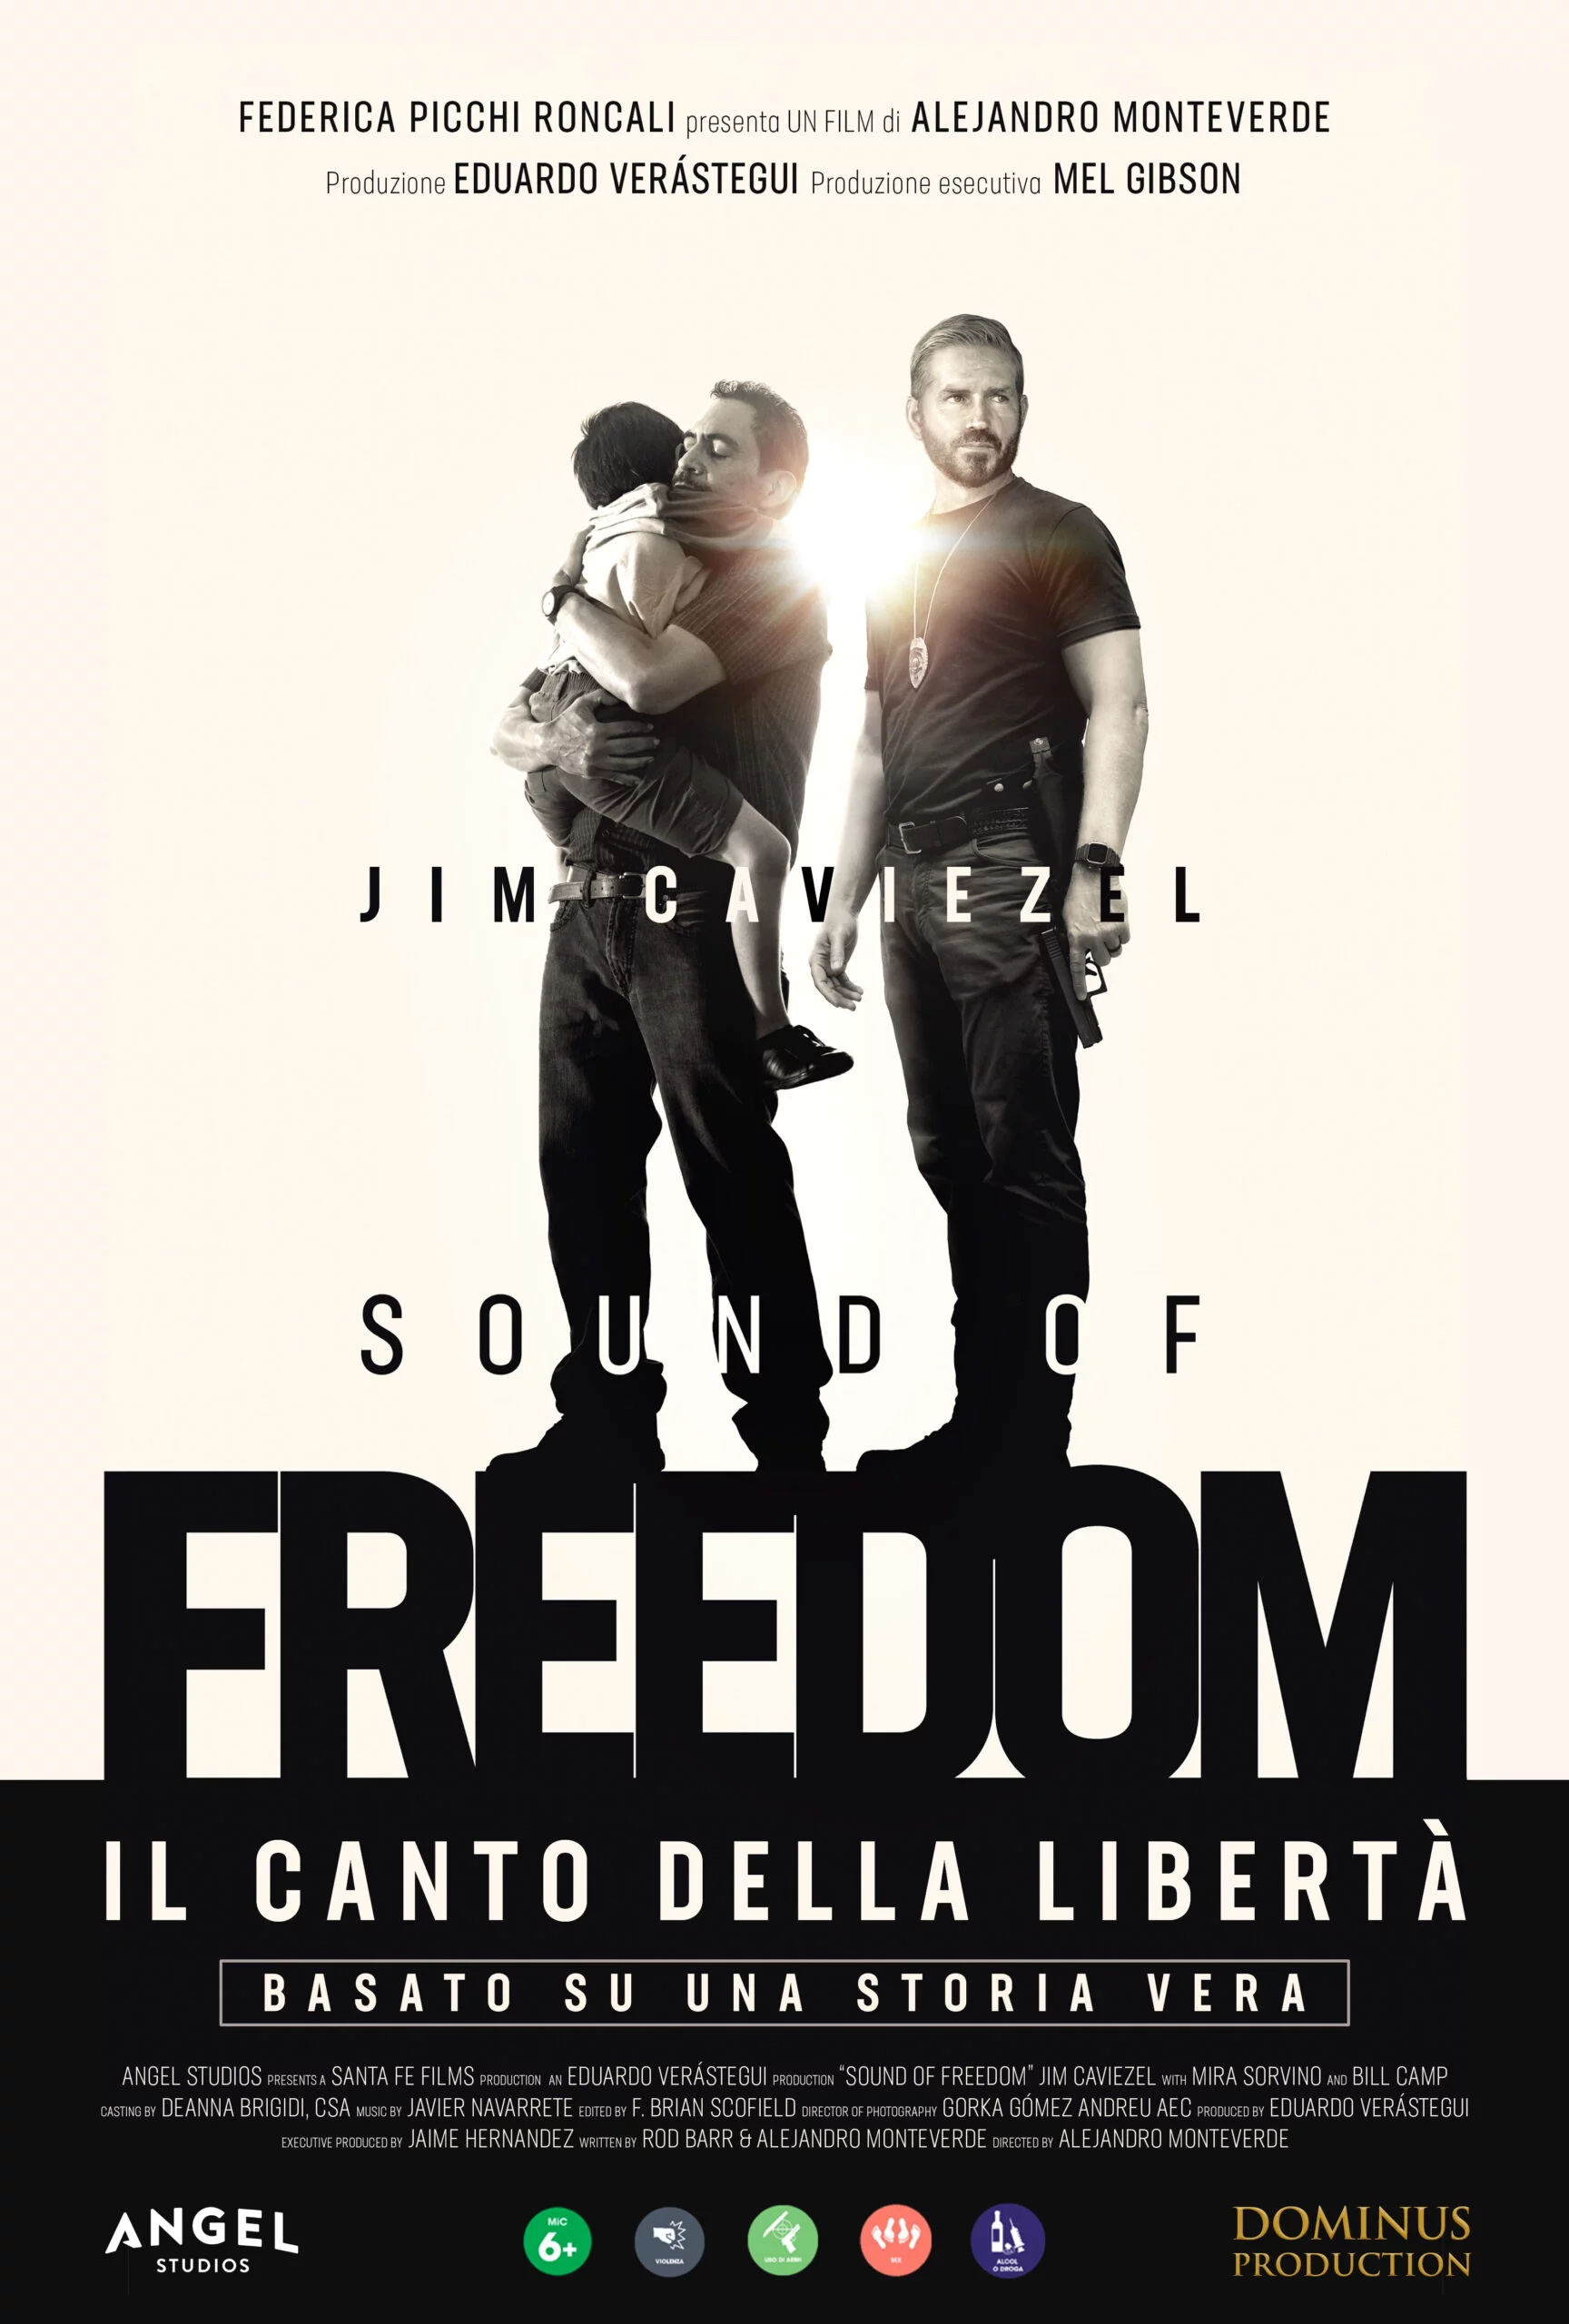 Sound of freedom - Il canto della libertà: il trailer italiano del film evento al boxoffice USA, il 19-20 febbraio al cinema